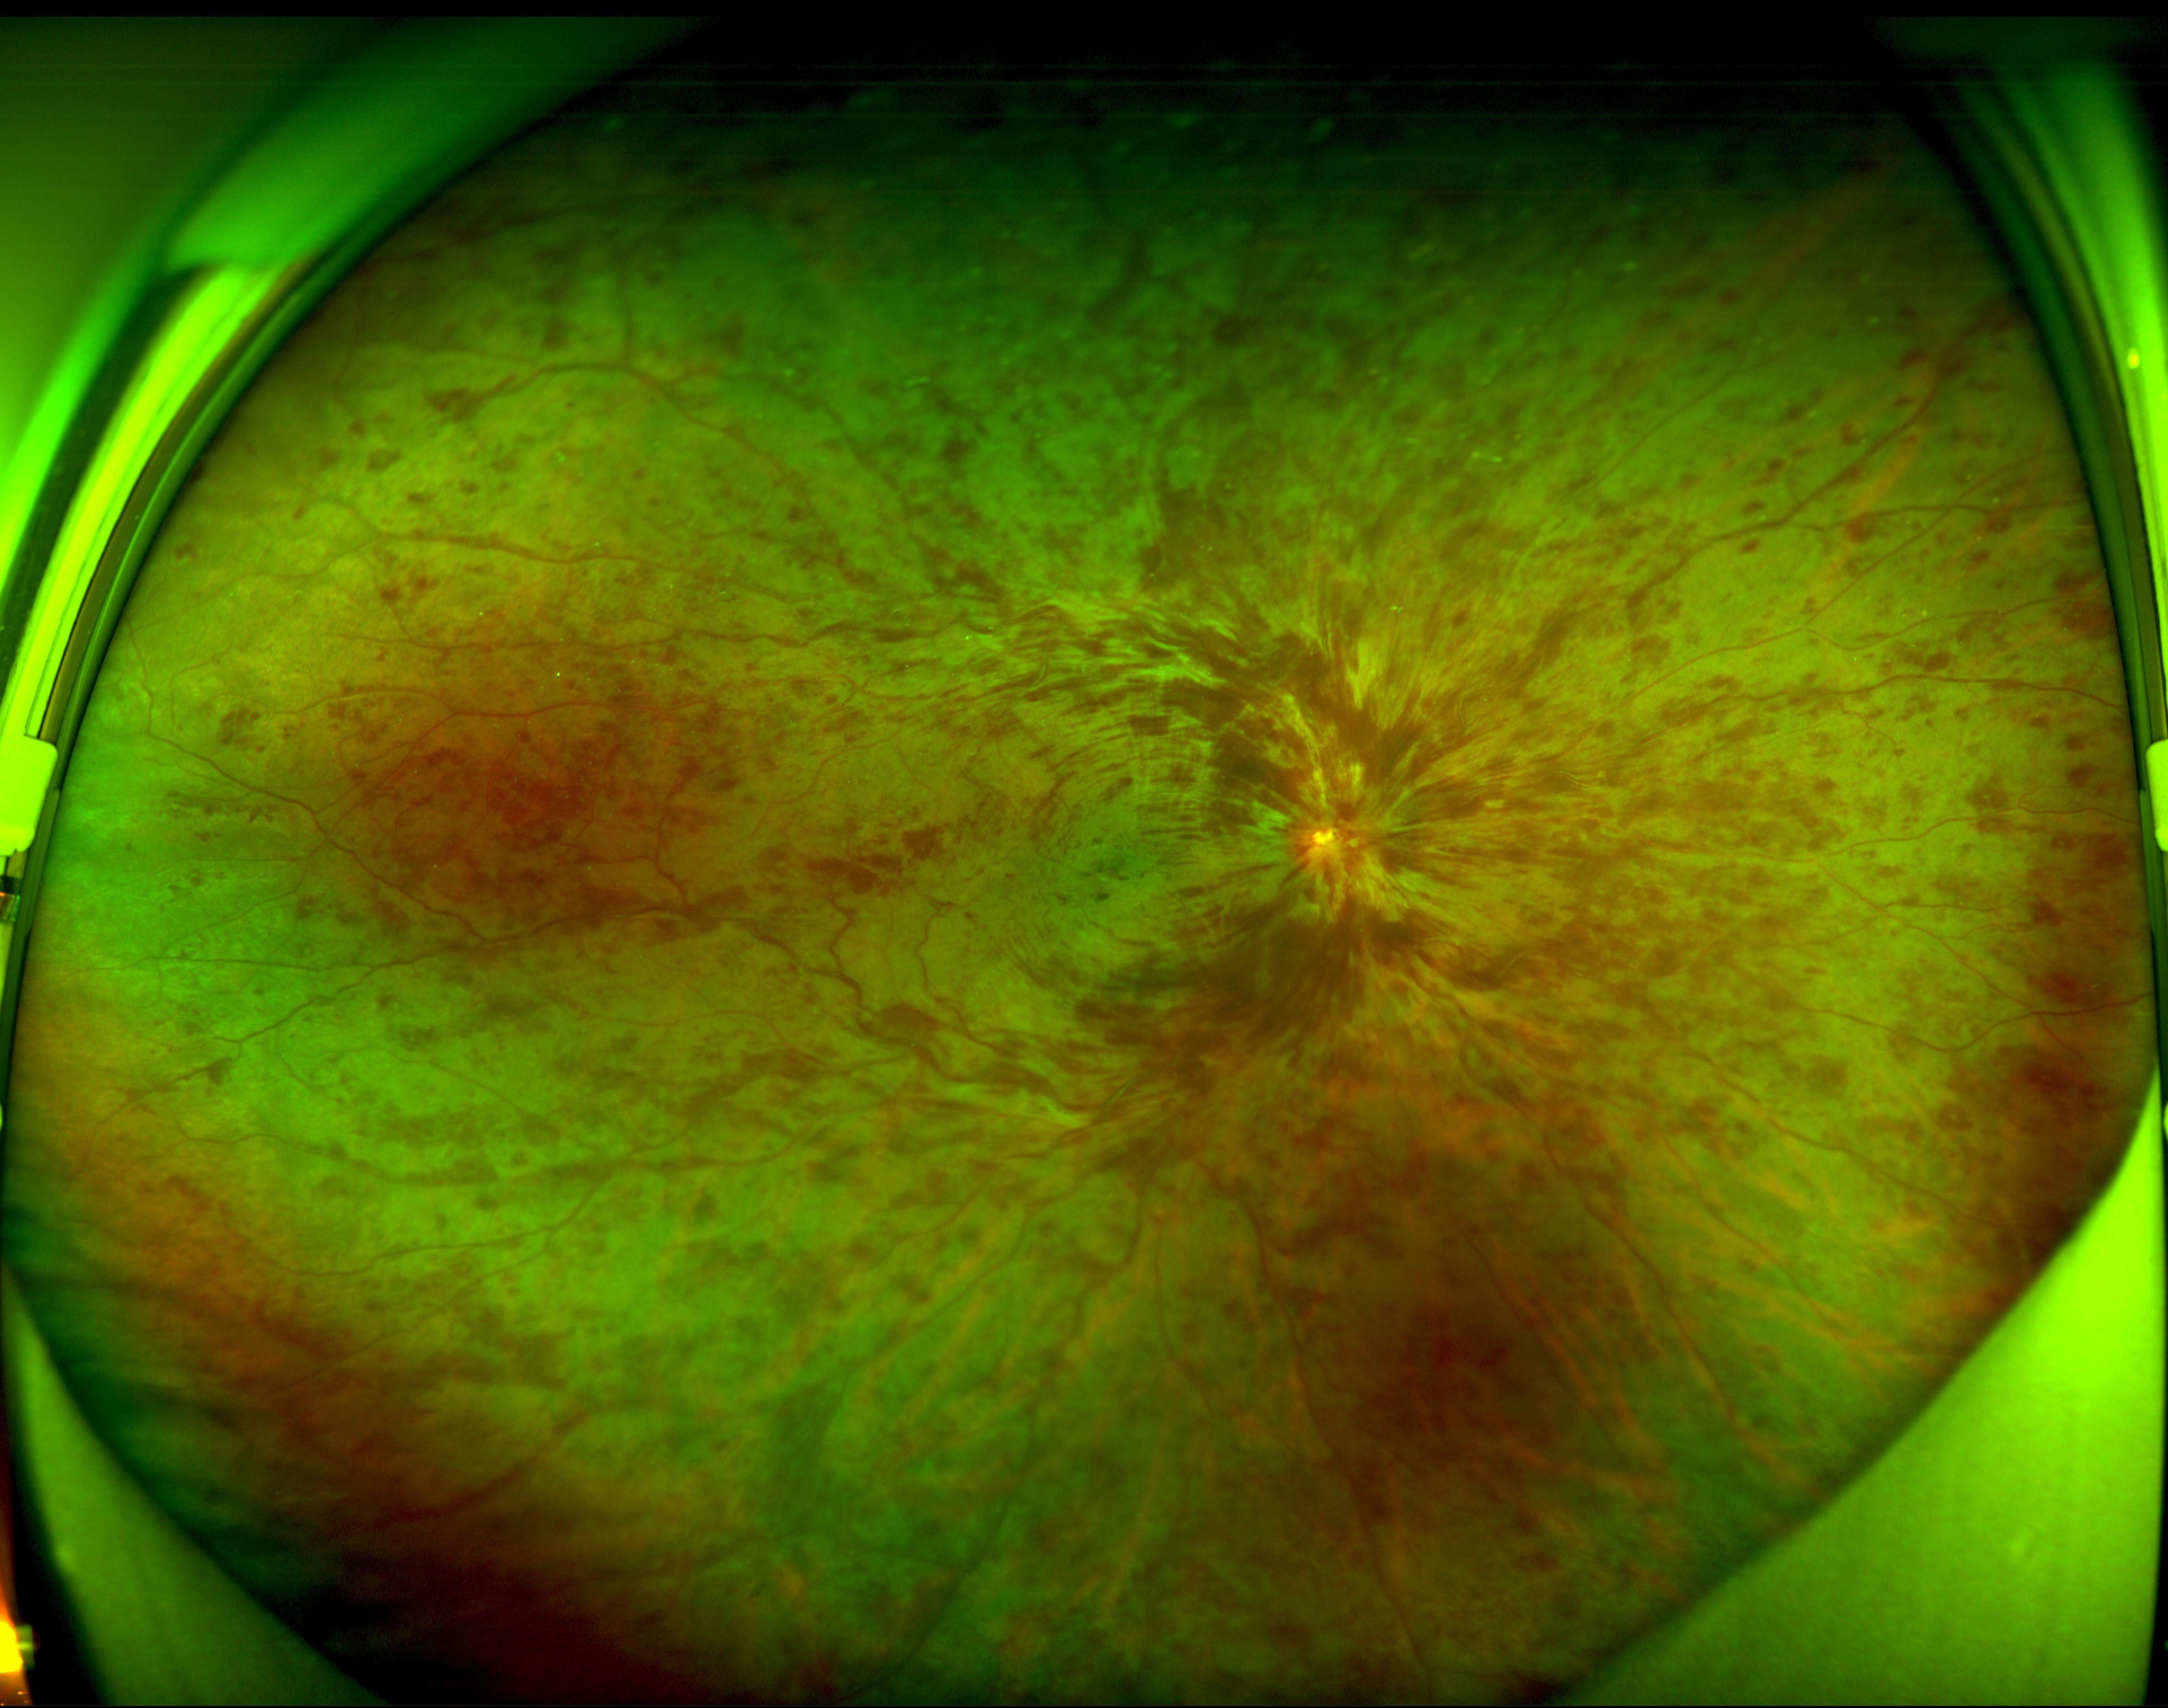 视网膜中央静脉阻塞图片